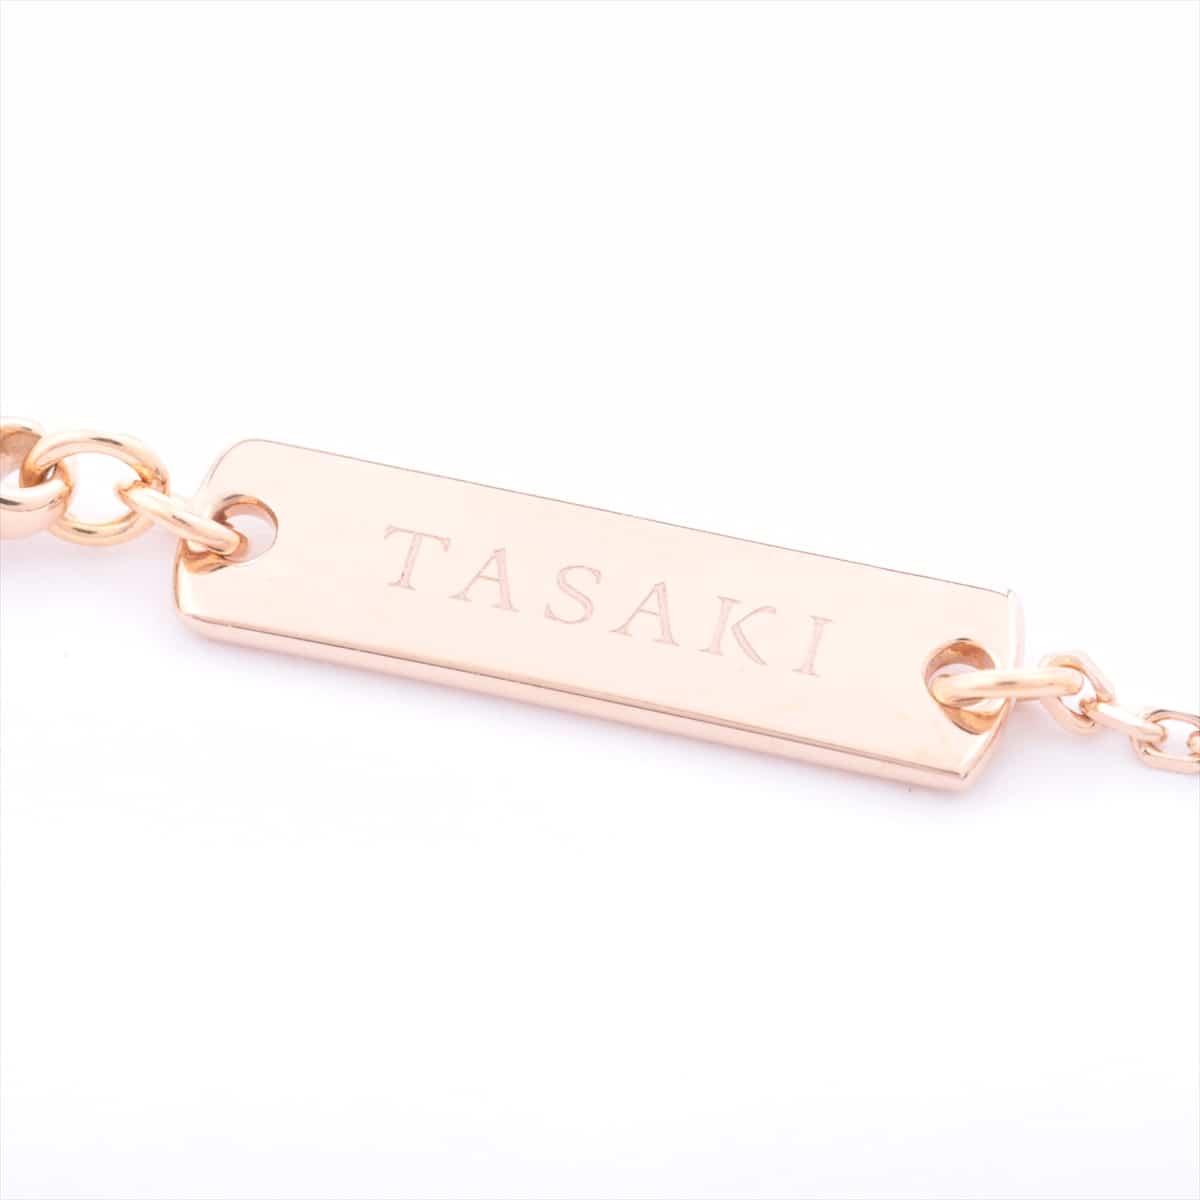 TASAKI TASAKI Balance Signature Necklace SG750